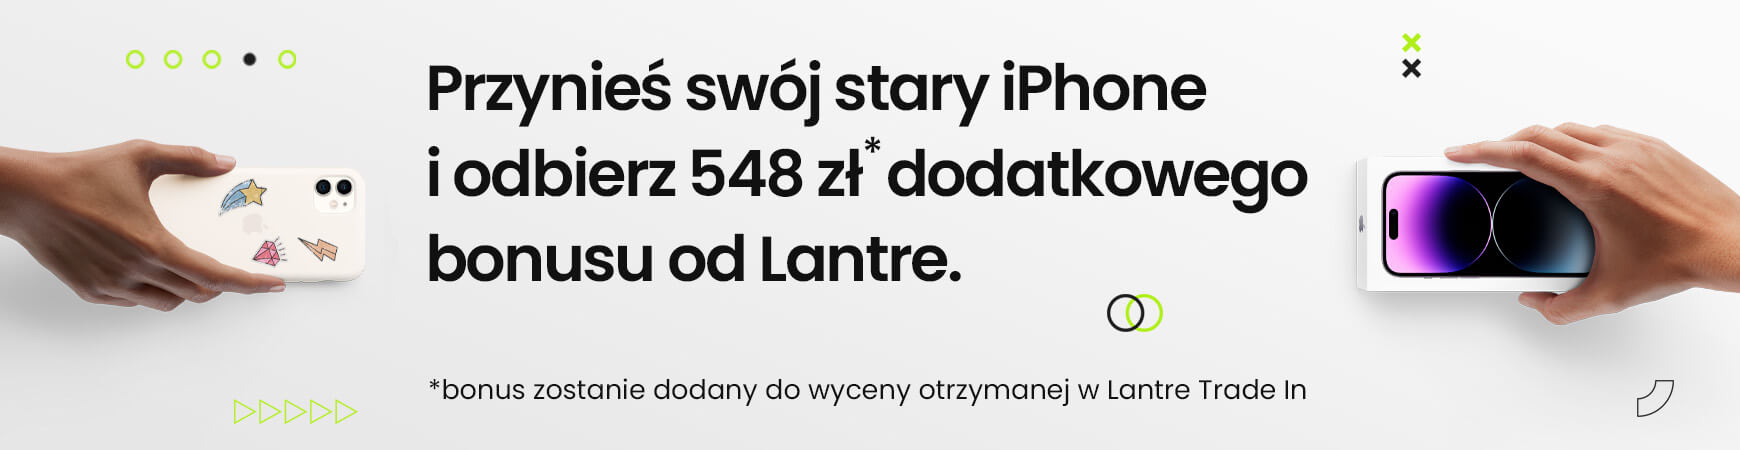 Odbierz dodatkowe 523 zł i kup nowy iPhone